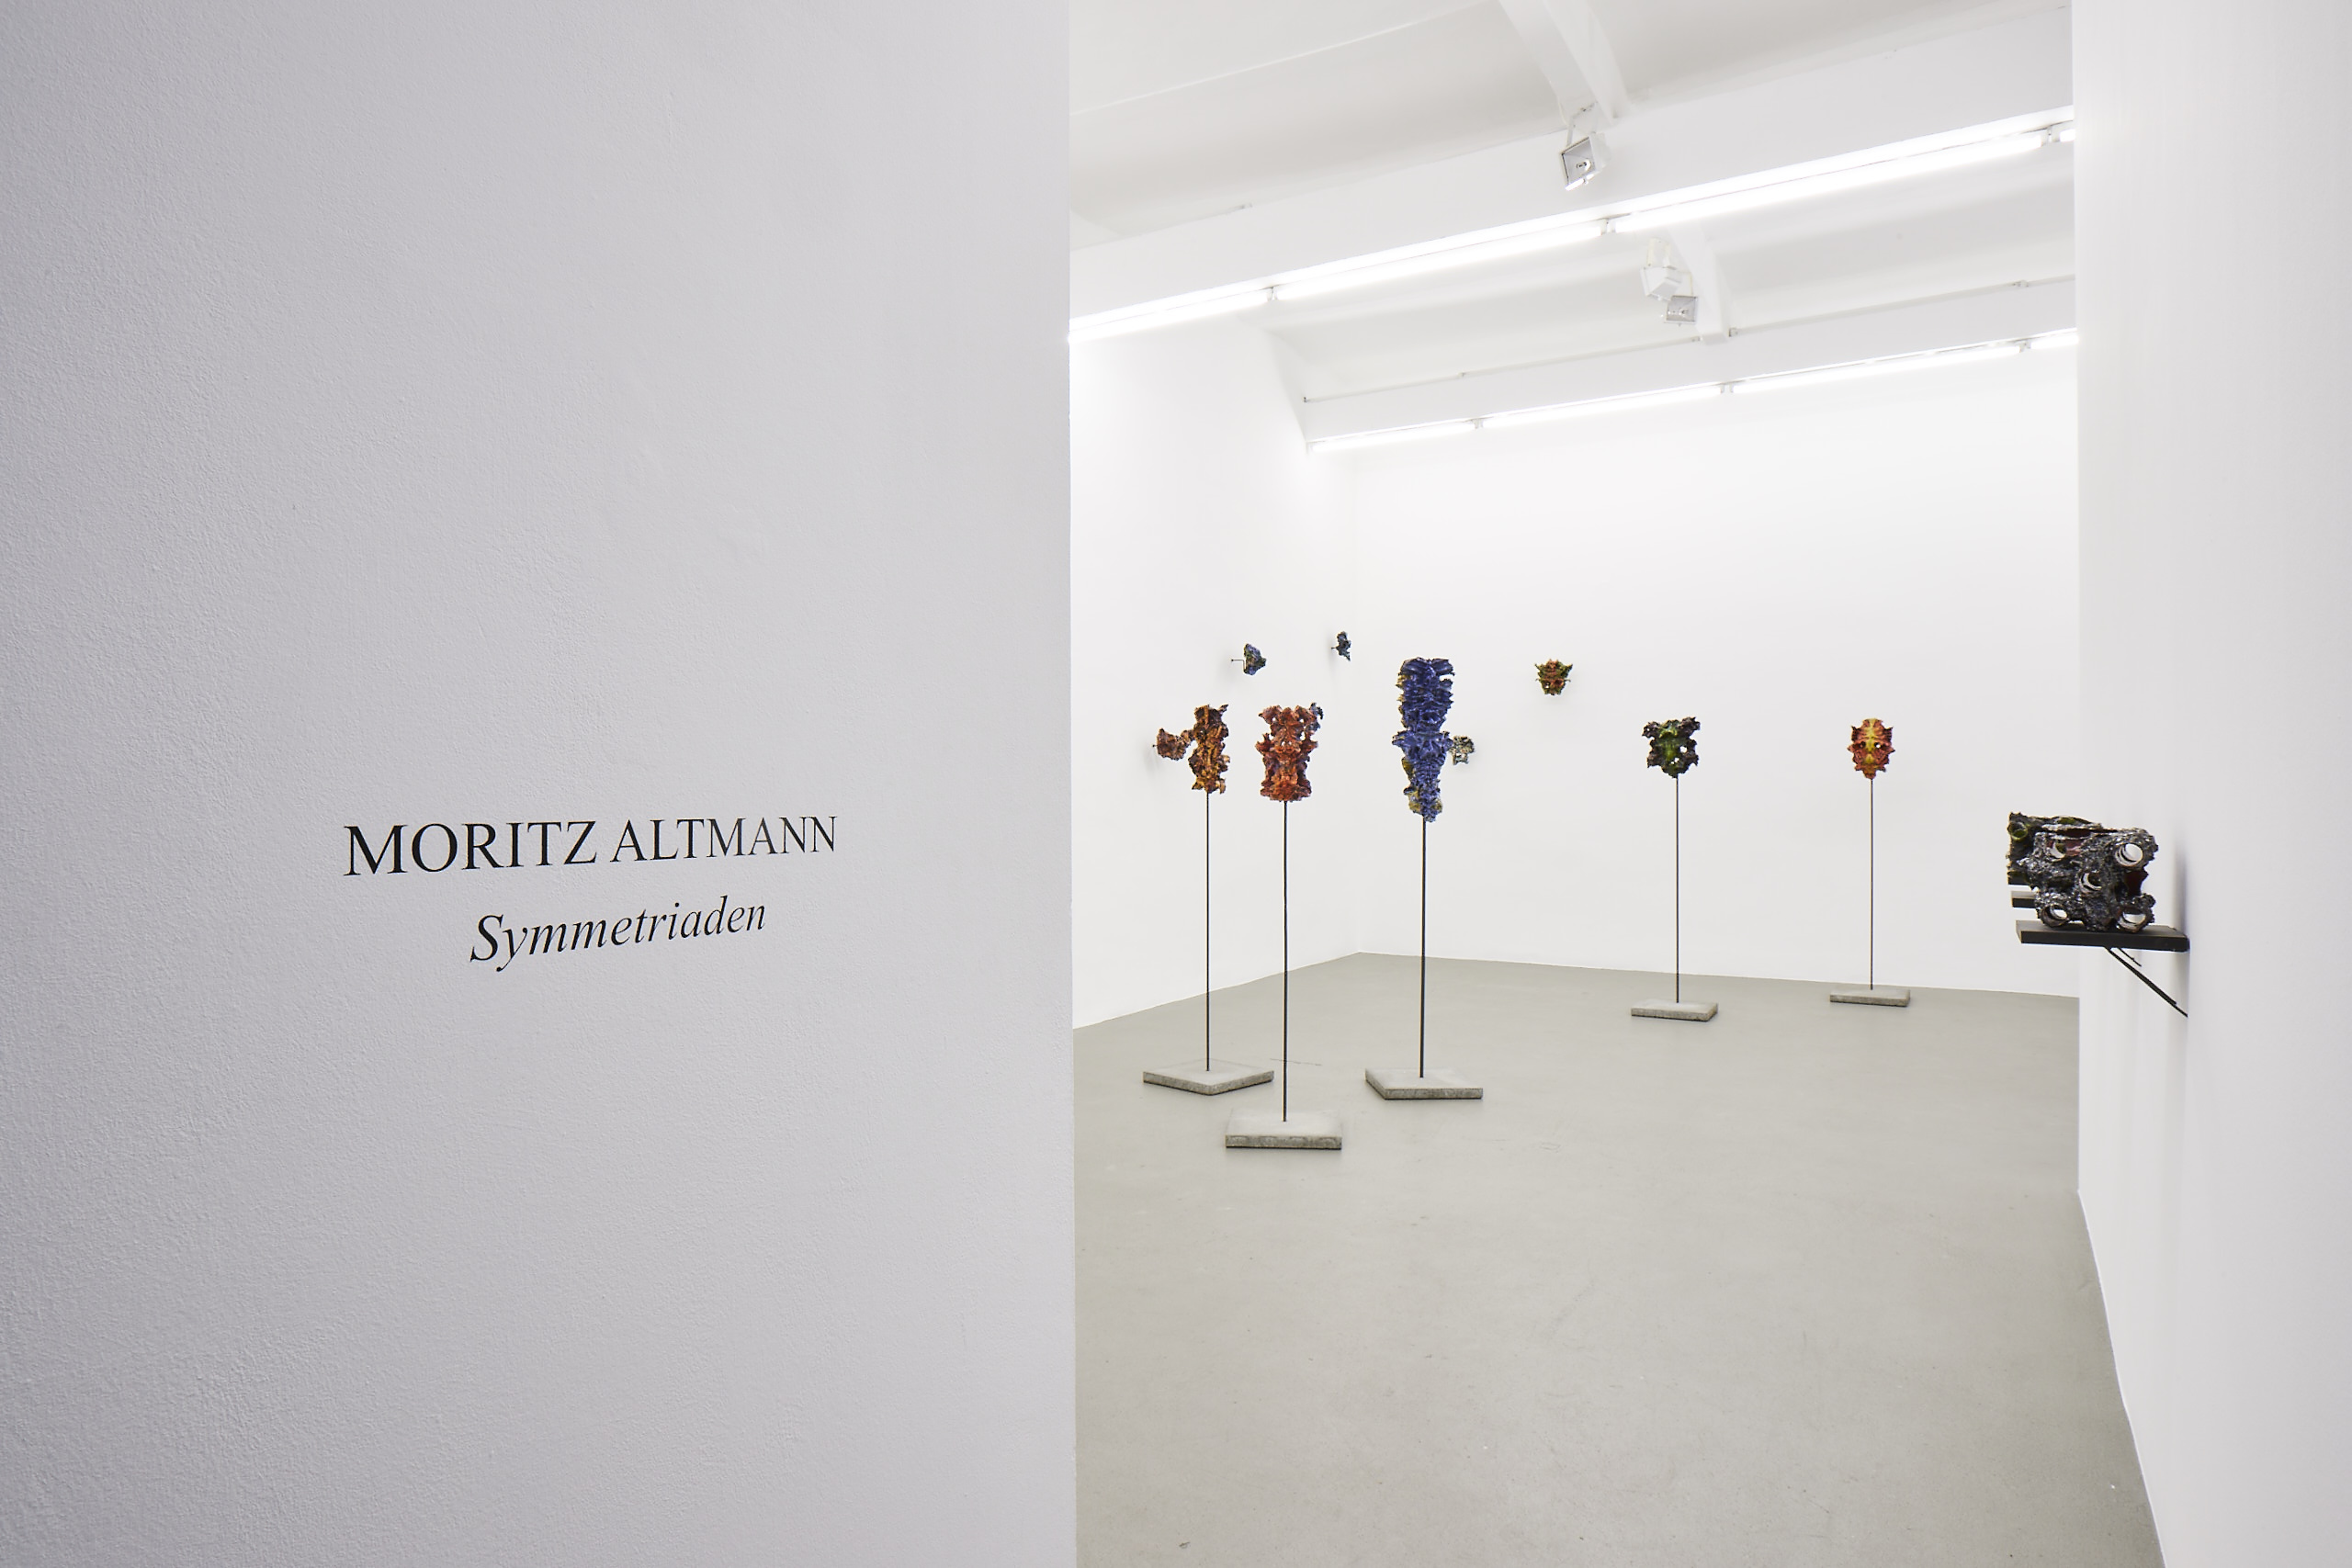 Moritz Altmann, Sfeir Semler Gallery, 2017